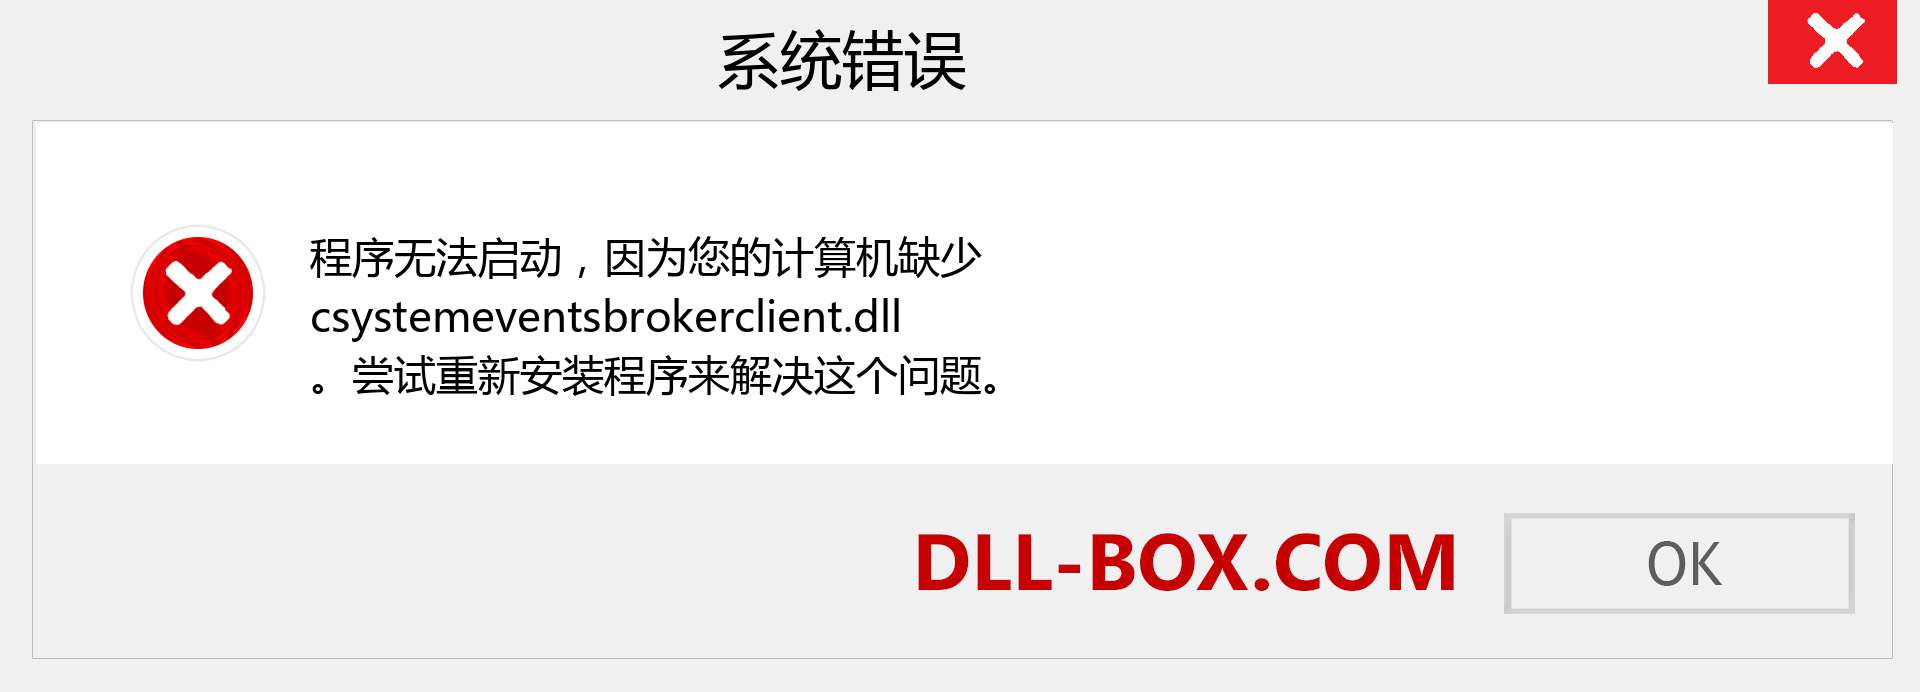 csystemeventsbrokerclient.dll 文件丢失？。 适用于 Windows 7、8、10 的下载 - 修复 Windows、照片、图像上的 csystemeventsbrokerclient dll 丢失错误